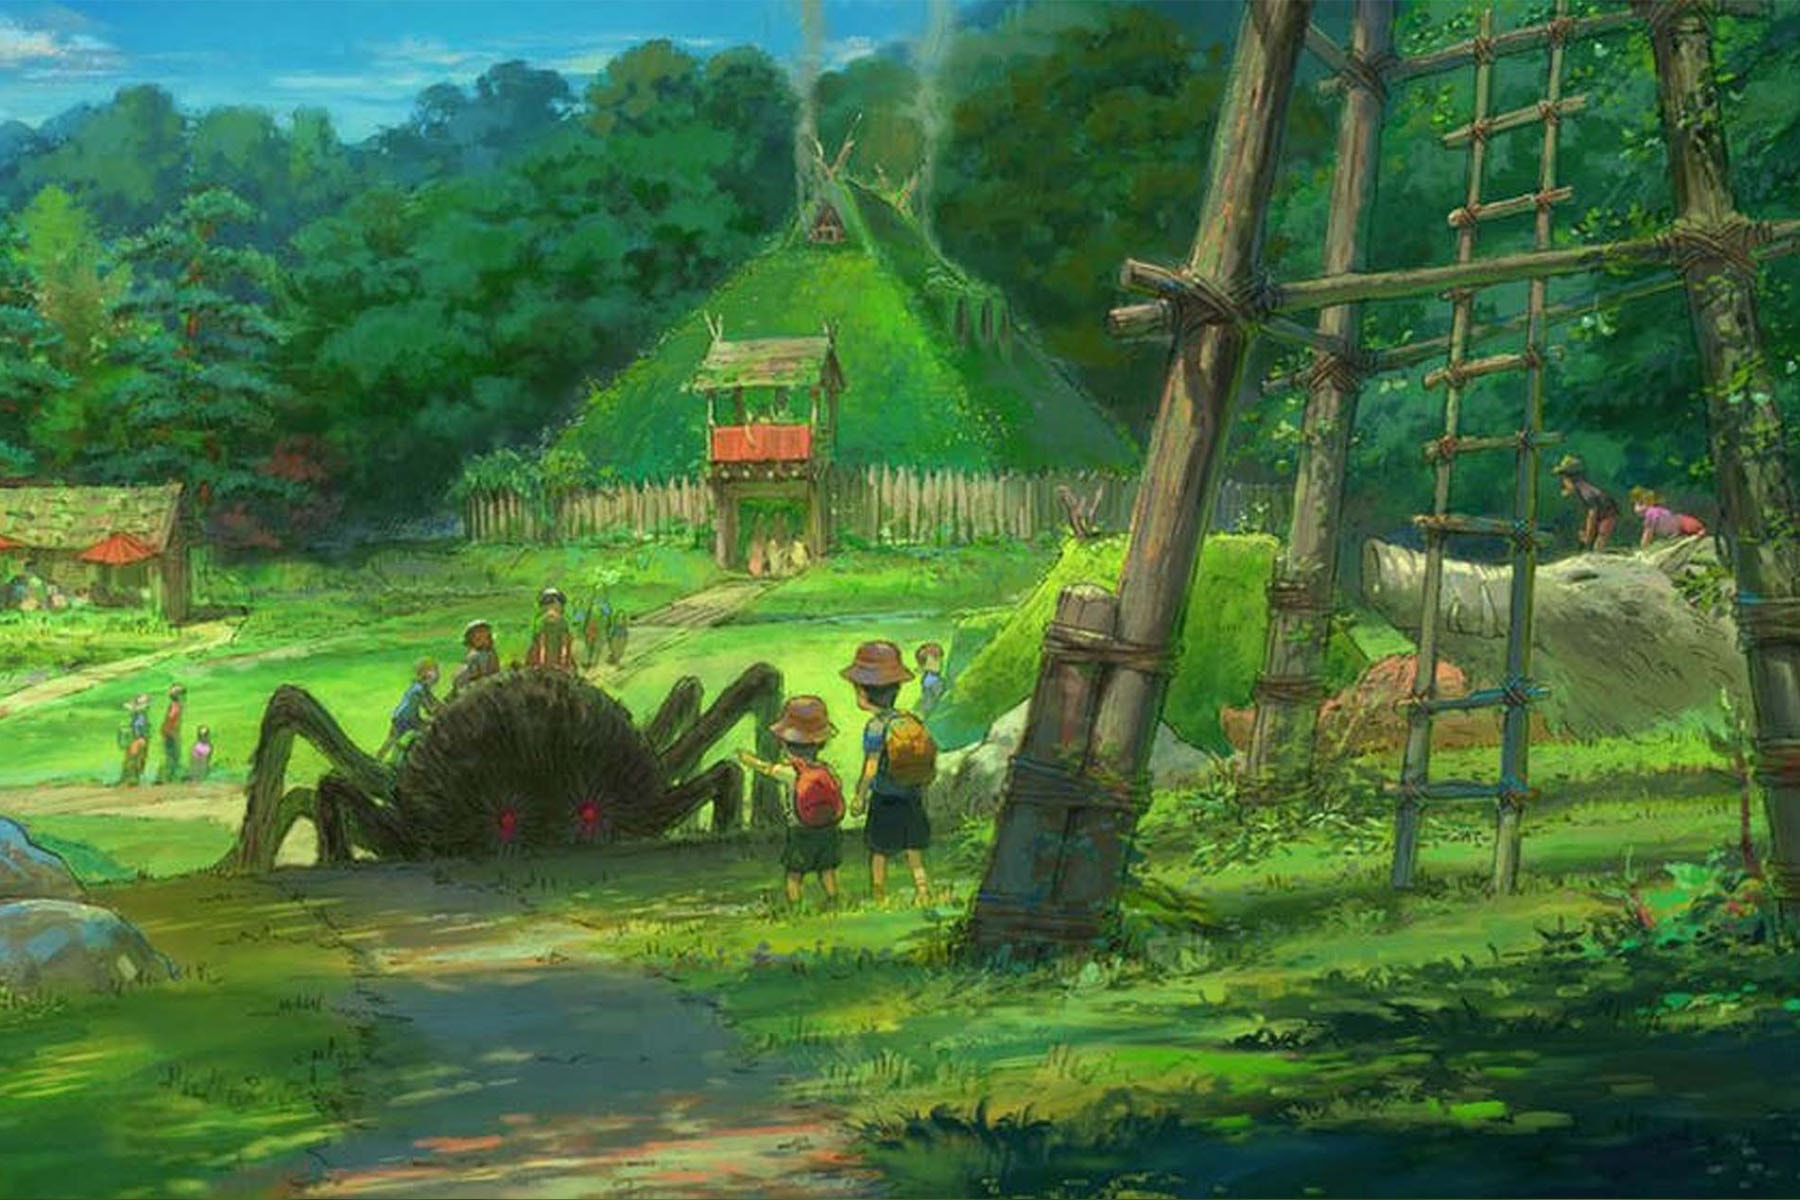 Studio Ghibli 吉卜力工作室主題公園開幕日期正式公佈